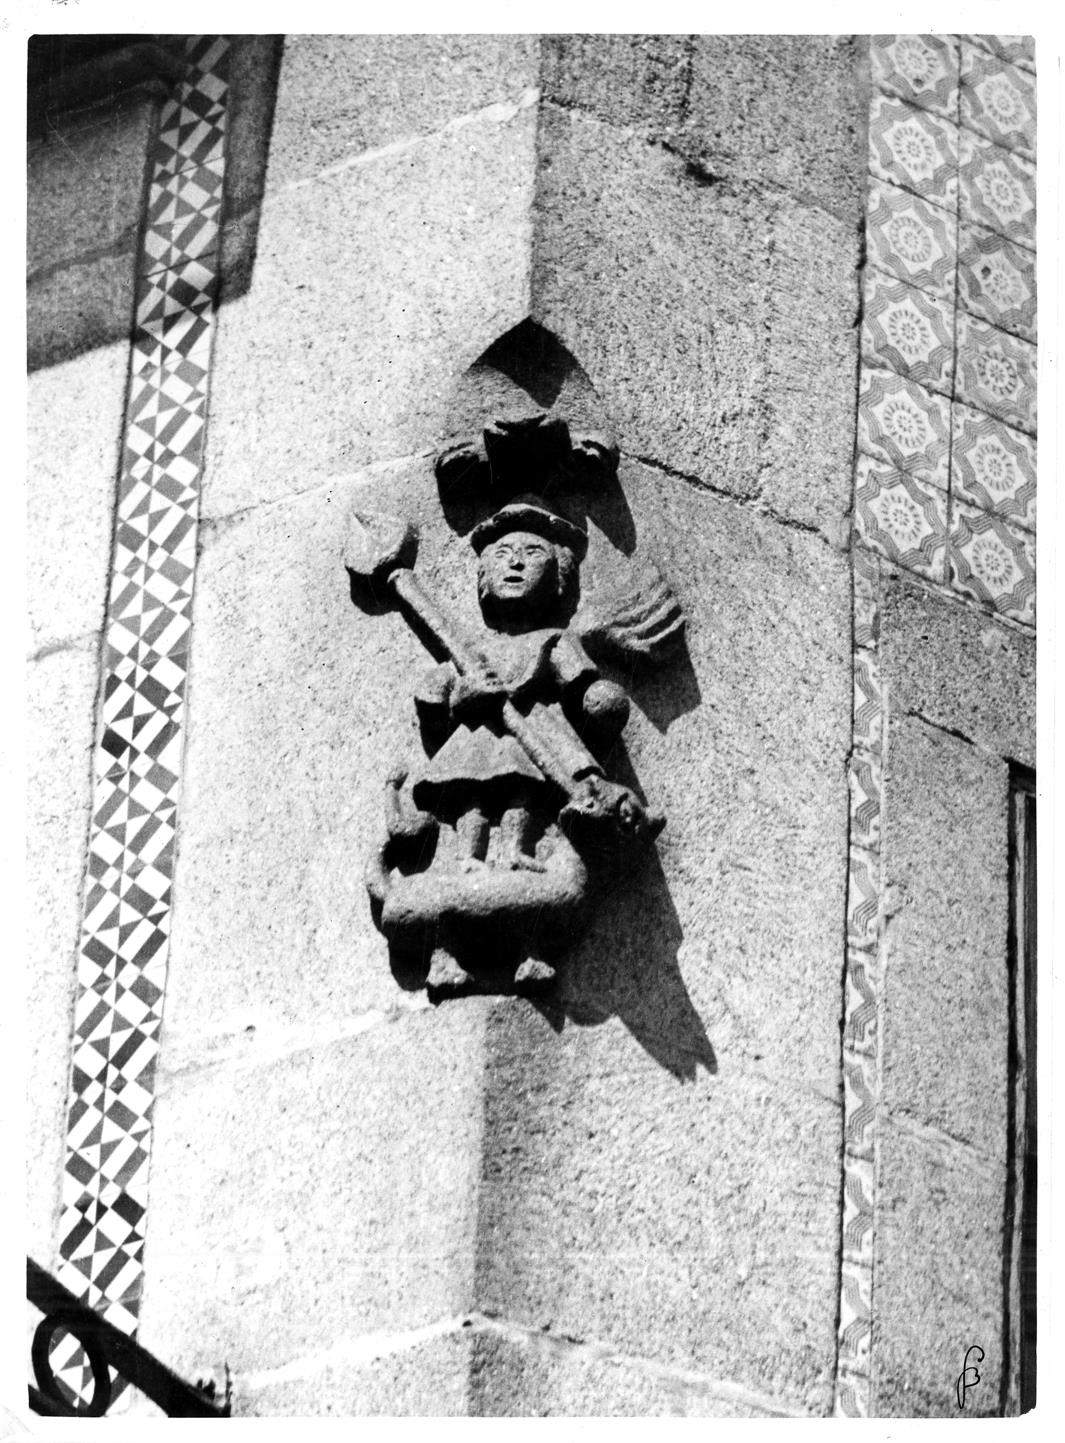 Aspectos arqueológicos e artisticos da cidade do Porto : São Miguel, na casa n.º 106 da rua dos Caldeireiros